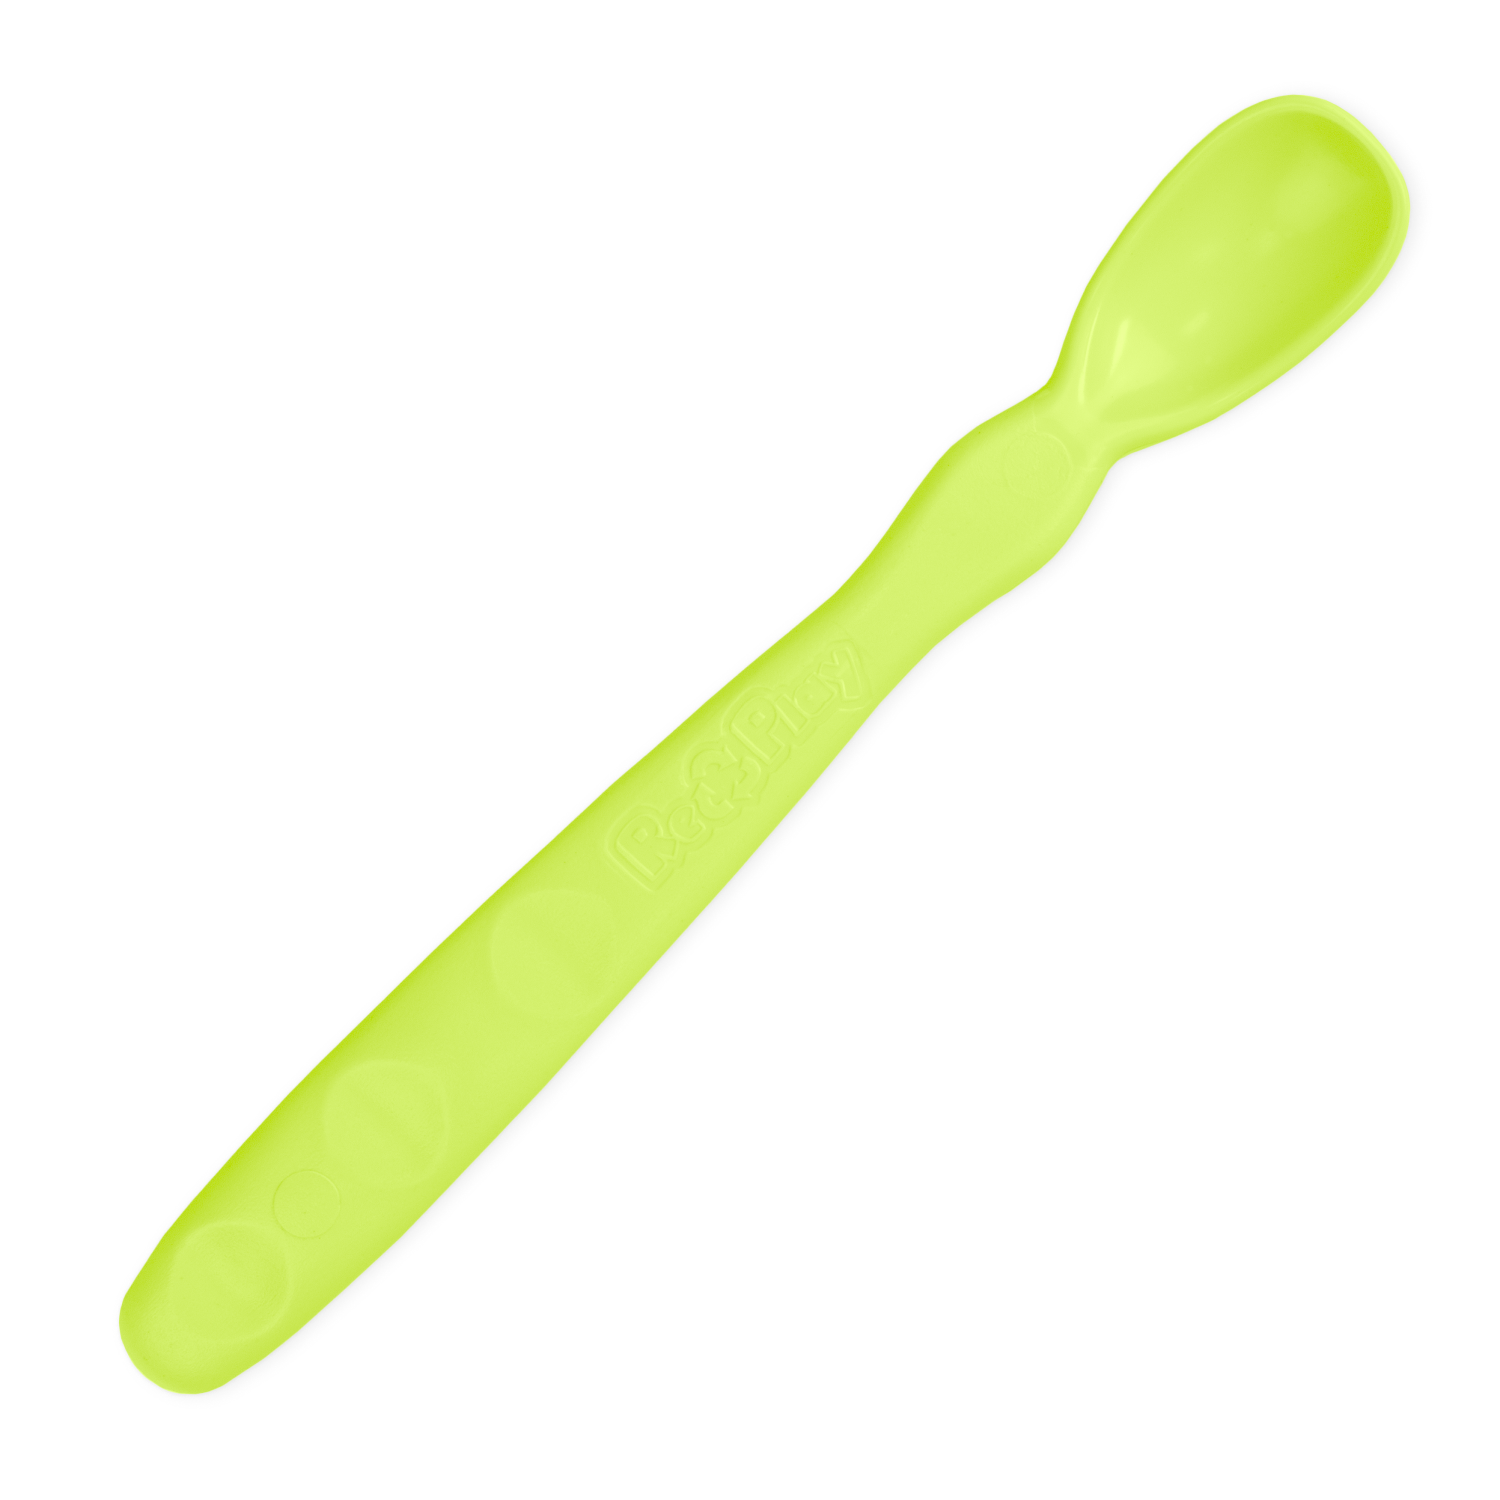 Re-play Infant Spoons - Colorwheel - 6pk : Target